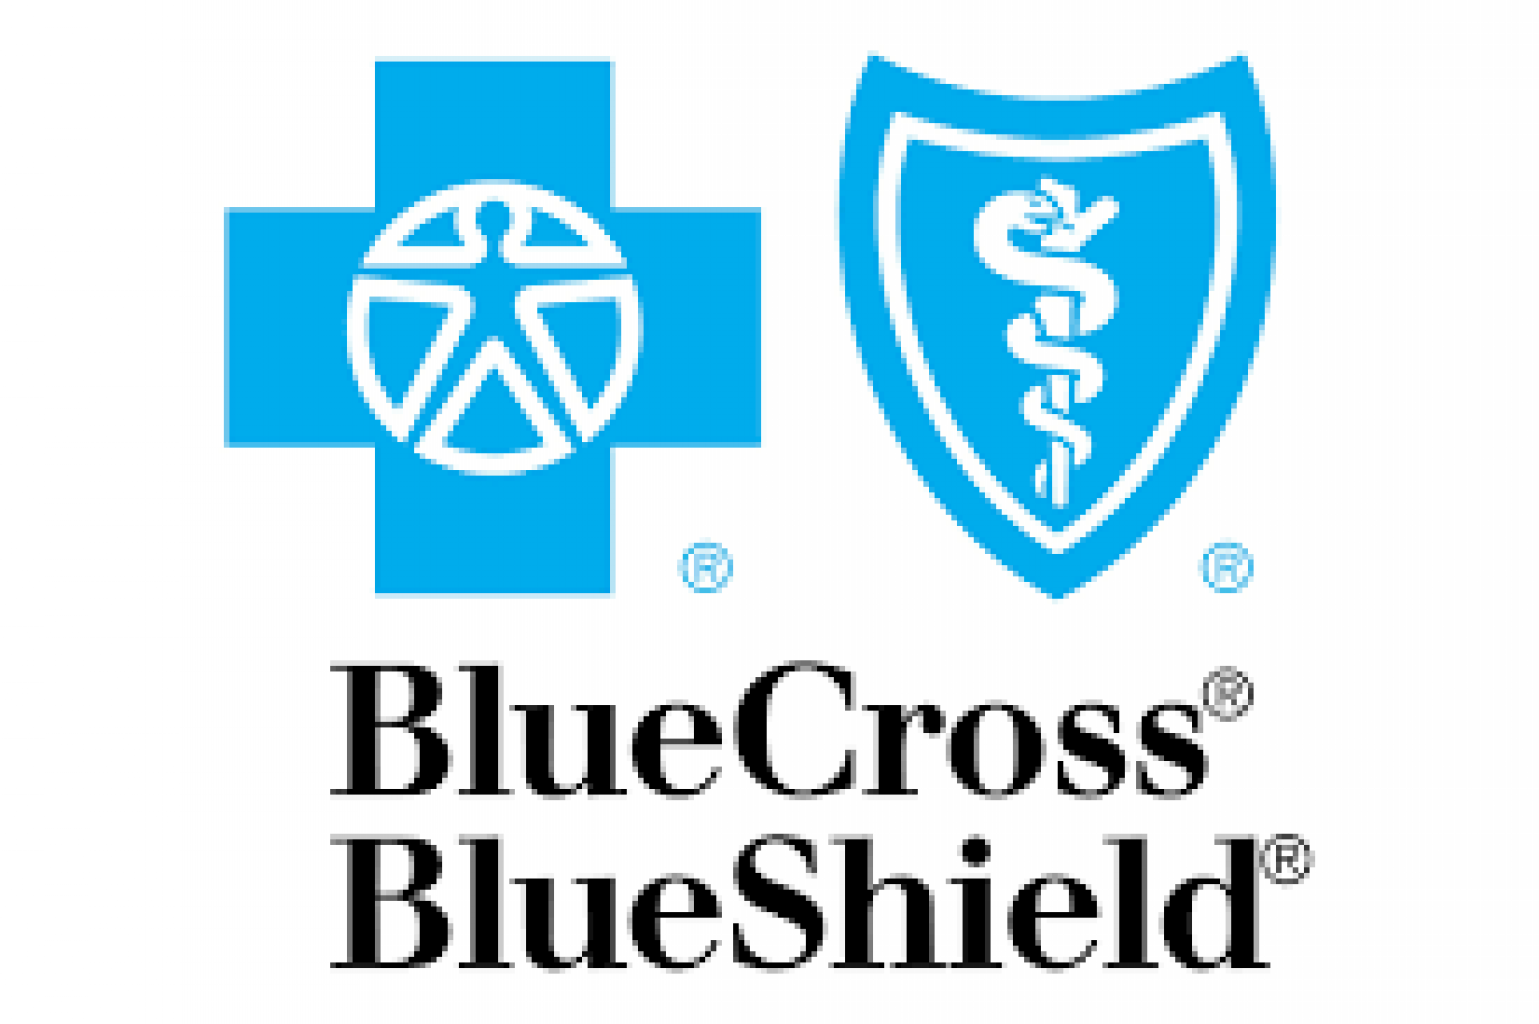 Blue Cross and Blue Shield of Oklahoma ofrece continuidad de tratamientos durante el brote de COVID-19 